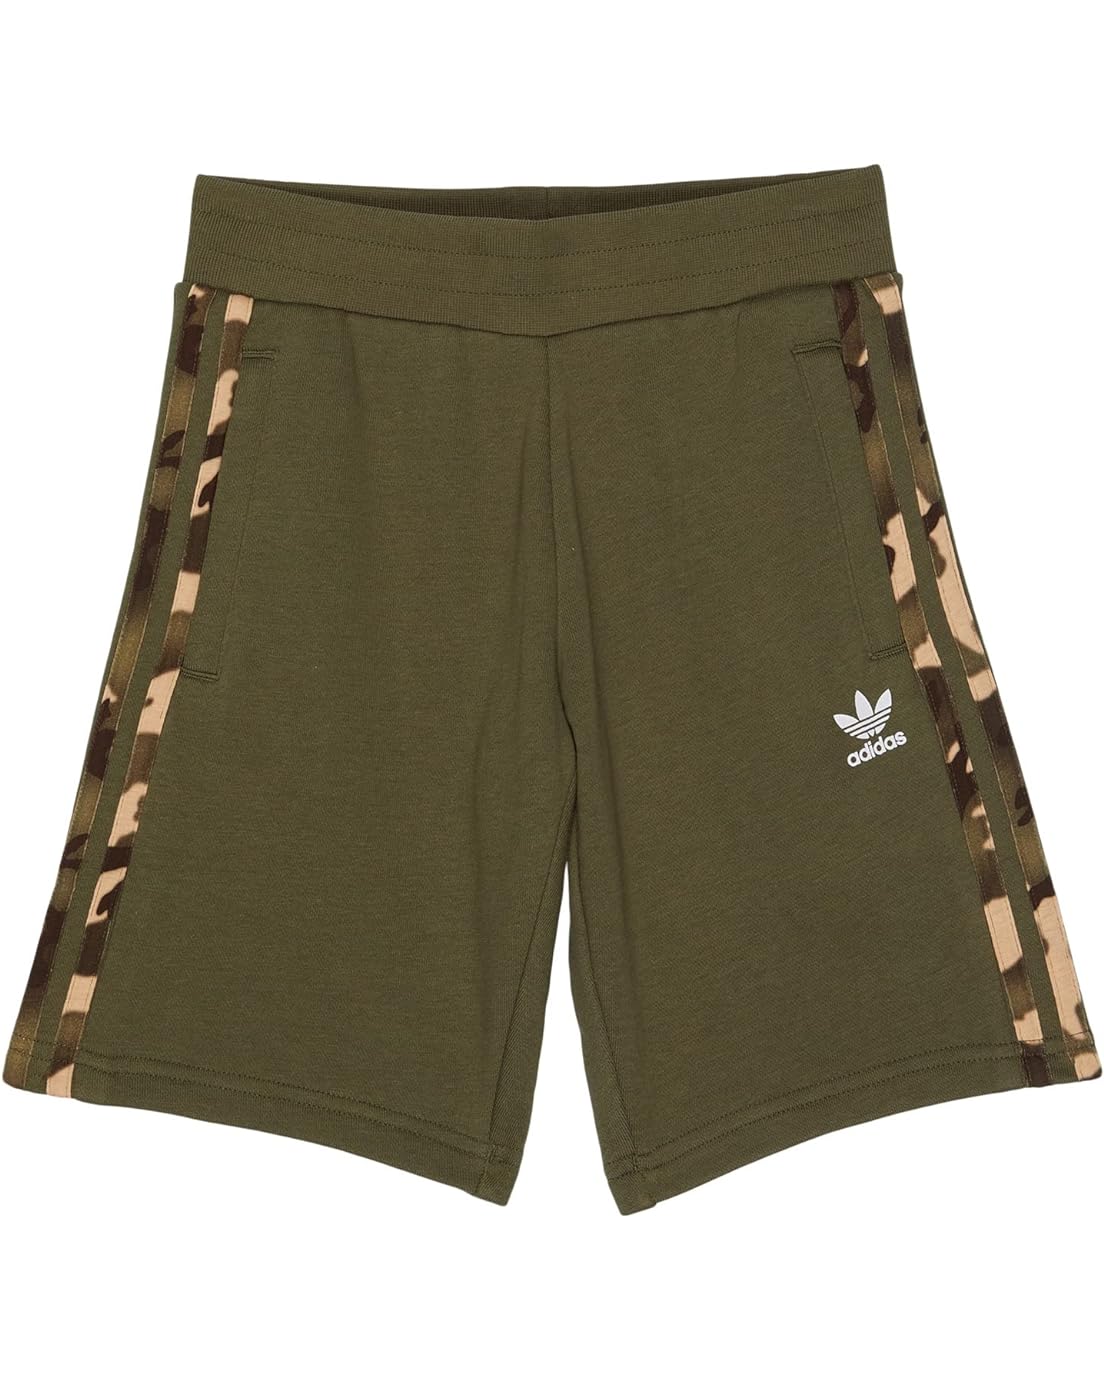 adidas Originals Kids Camouflage Shorts (Little Kids/Big Kids)